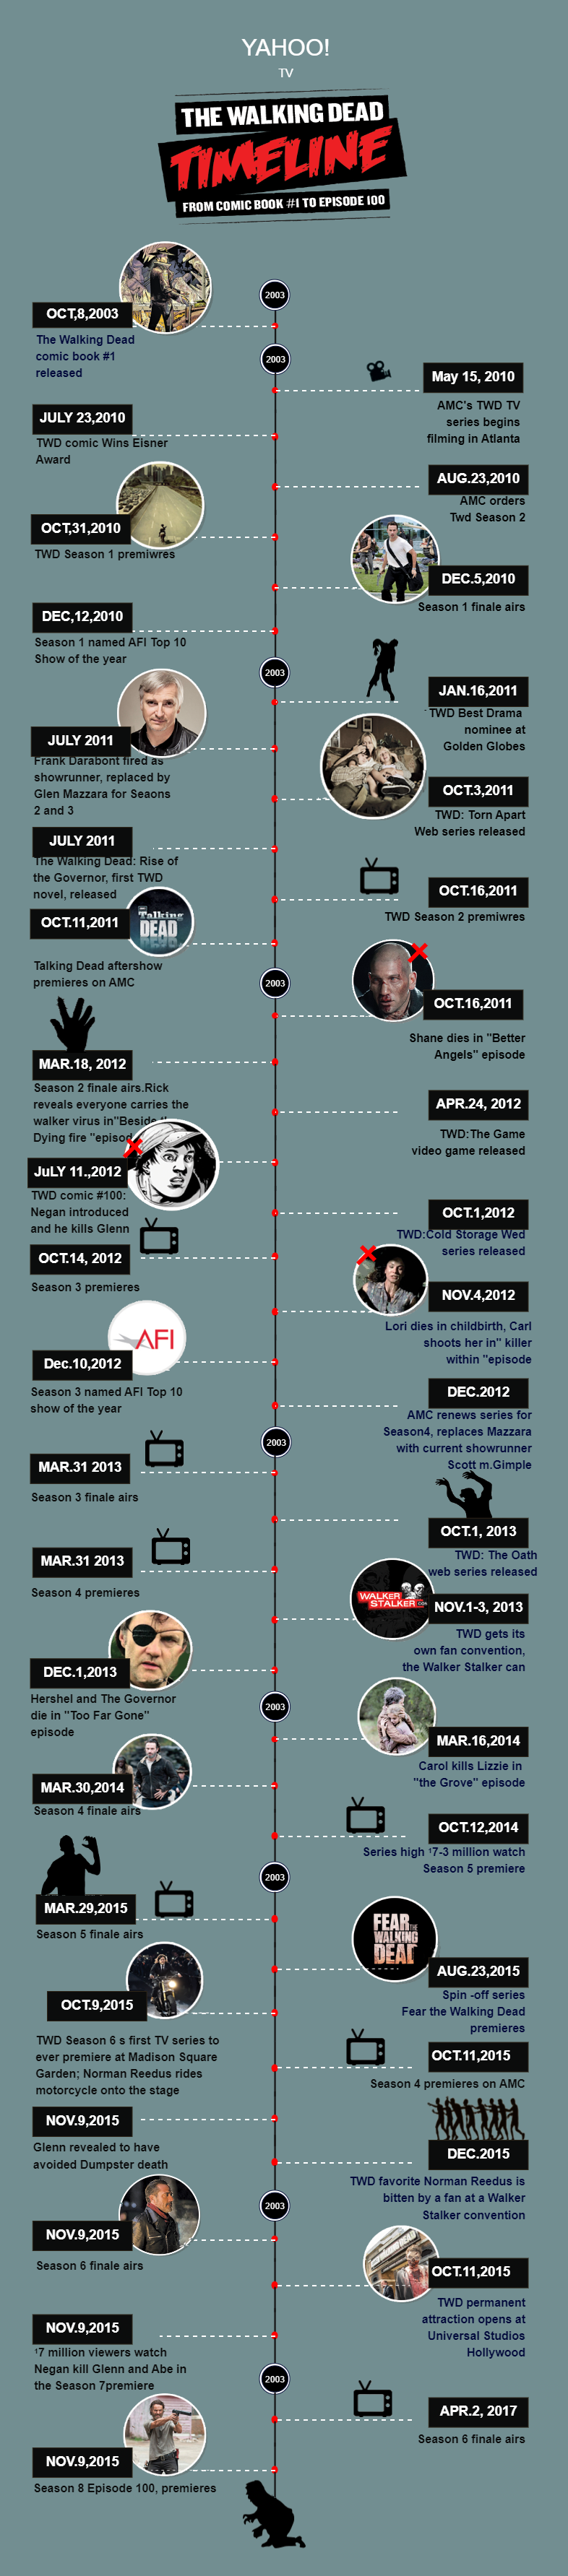 The Walking Dead Timeline